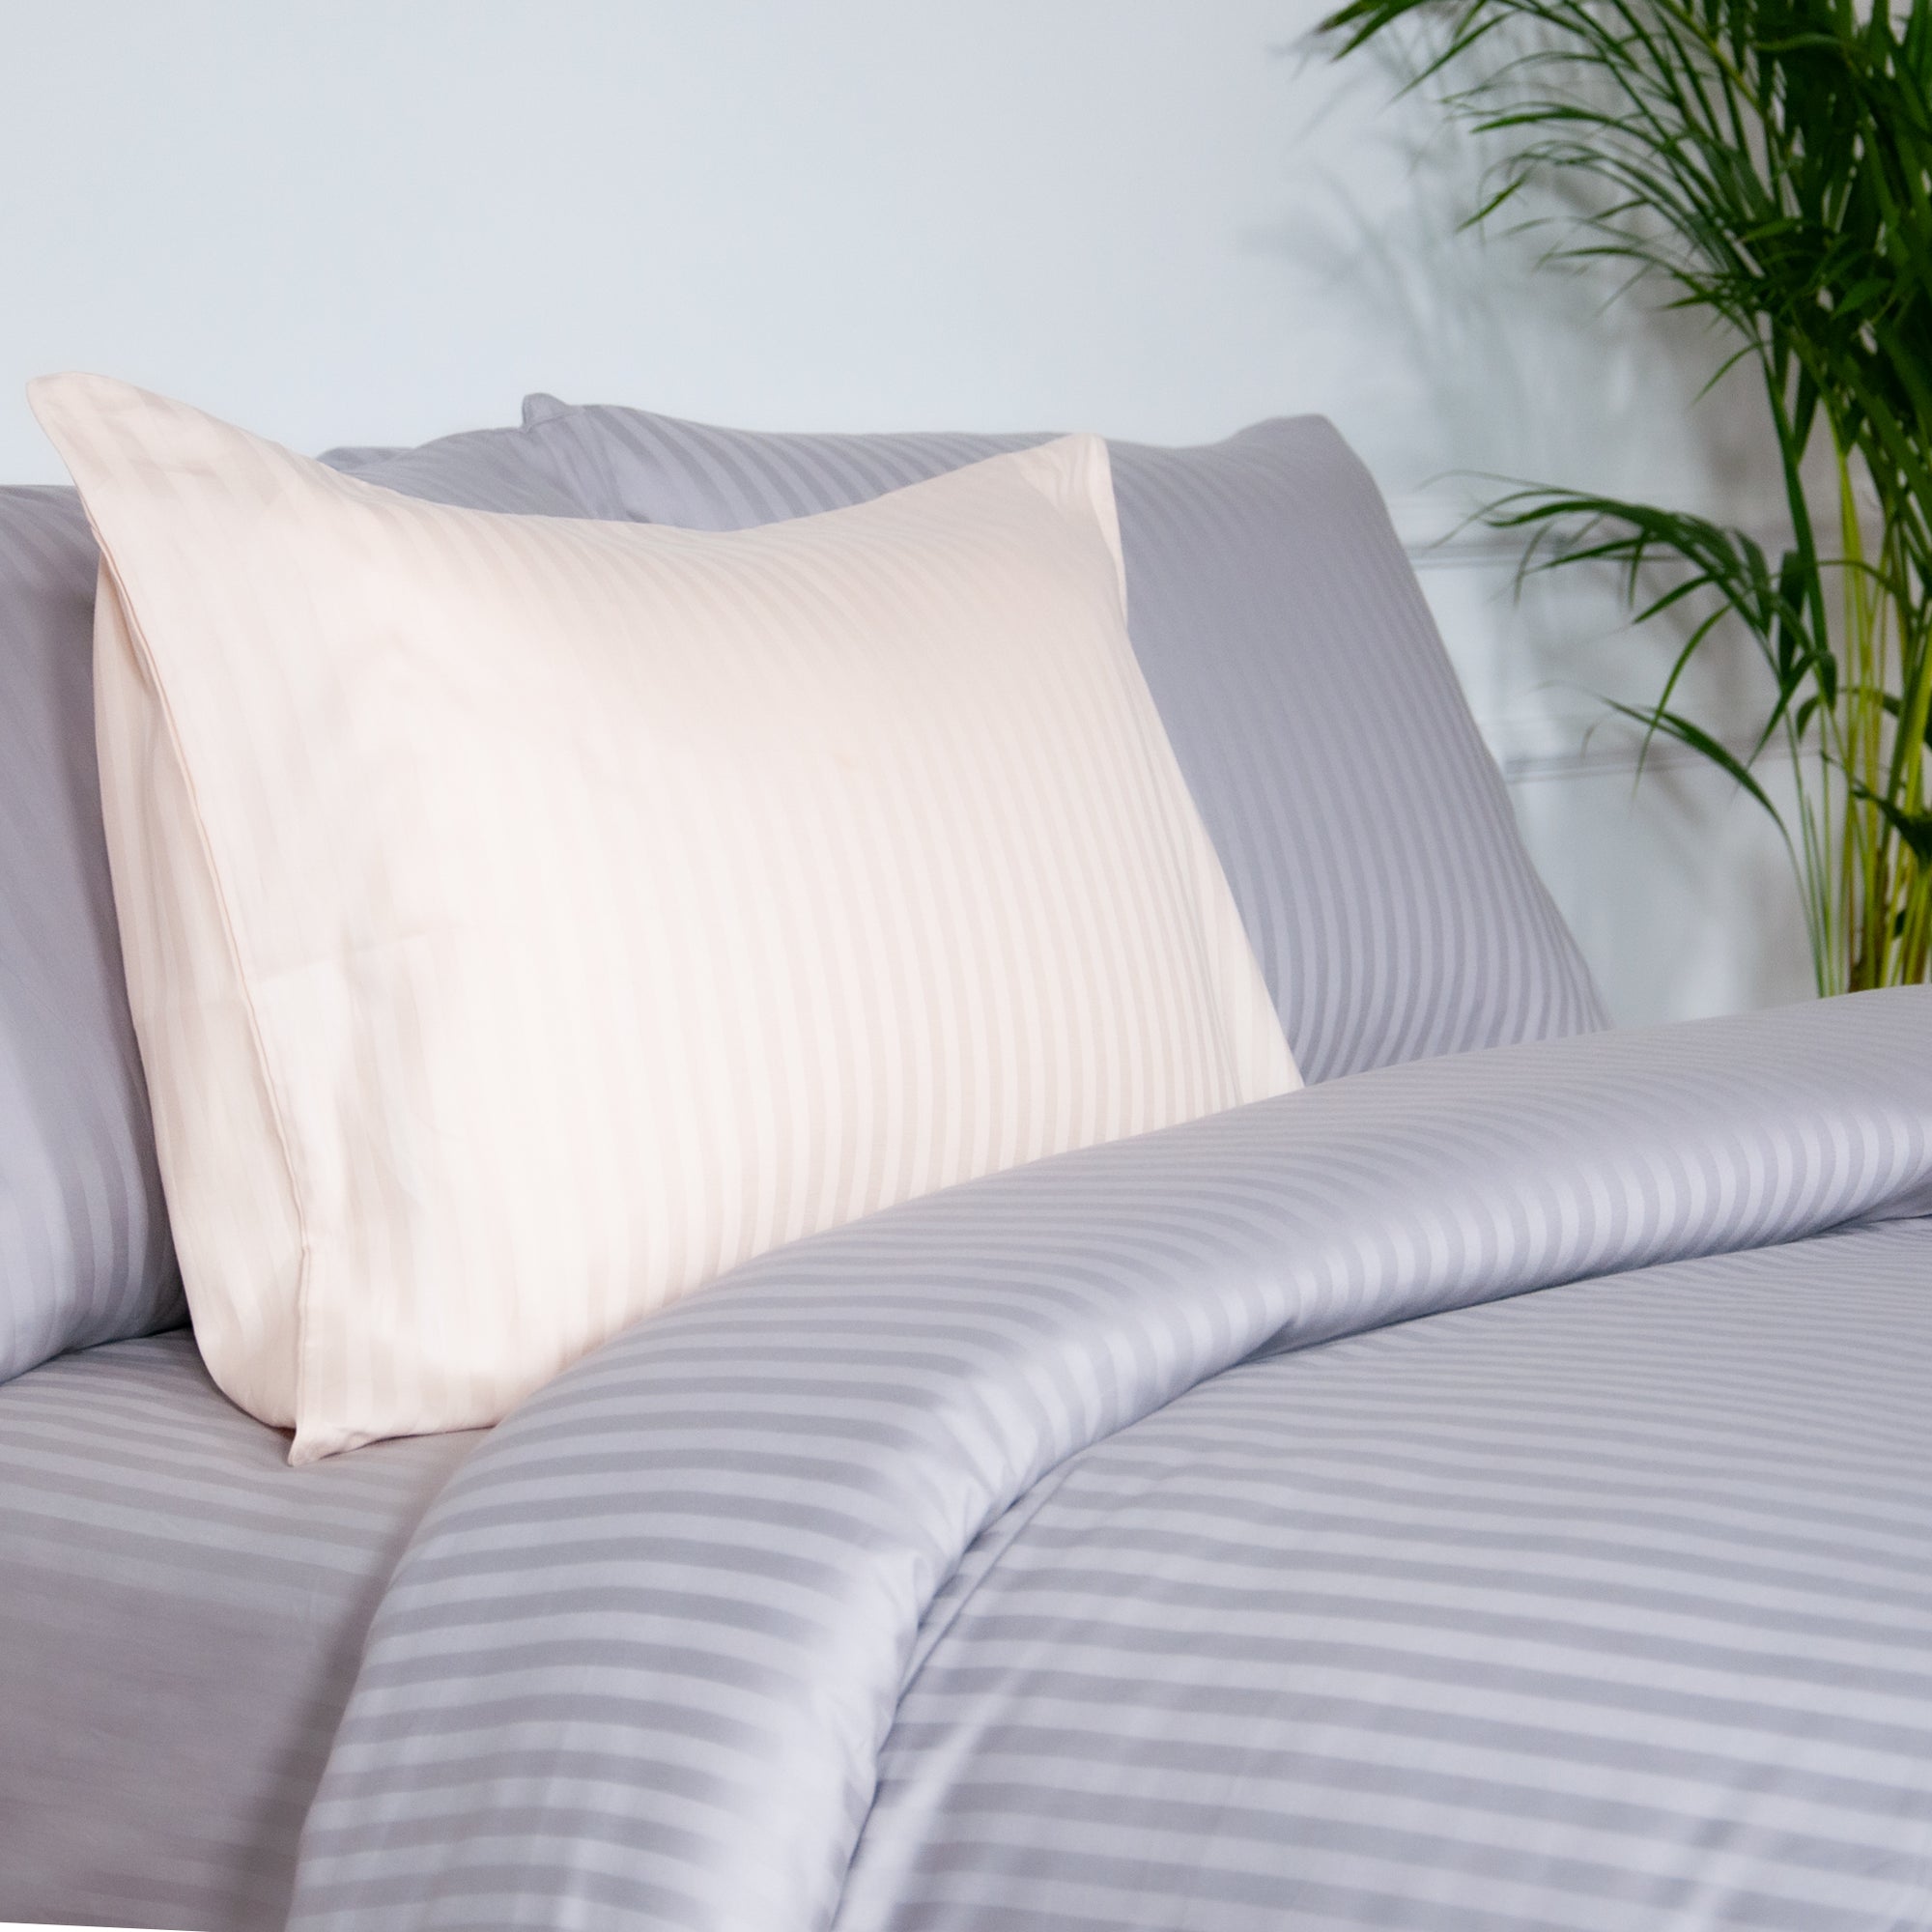 Einteiliges, grau gestreiftes Bettlaken aus 100 % Baumwollsatin